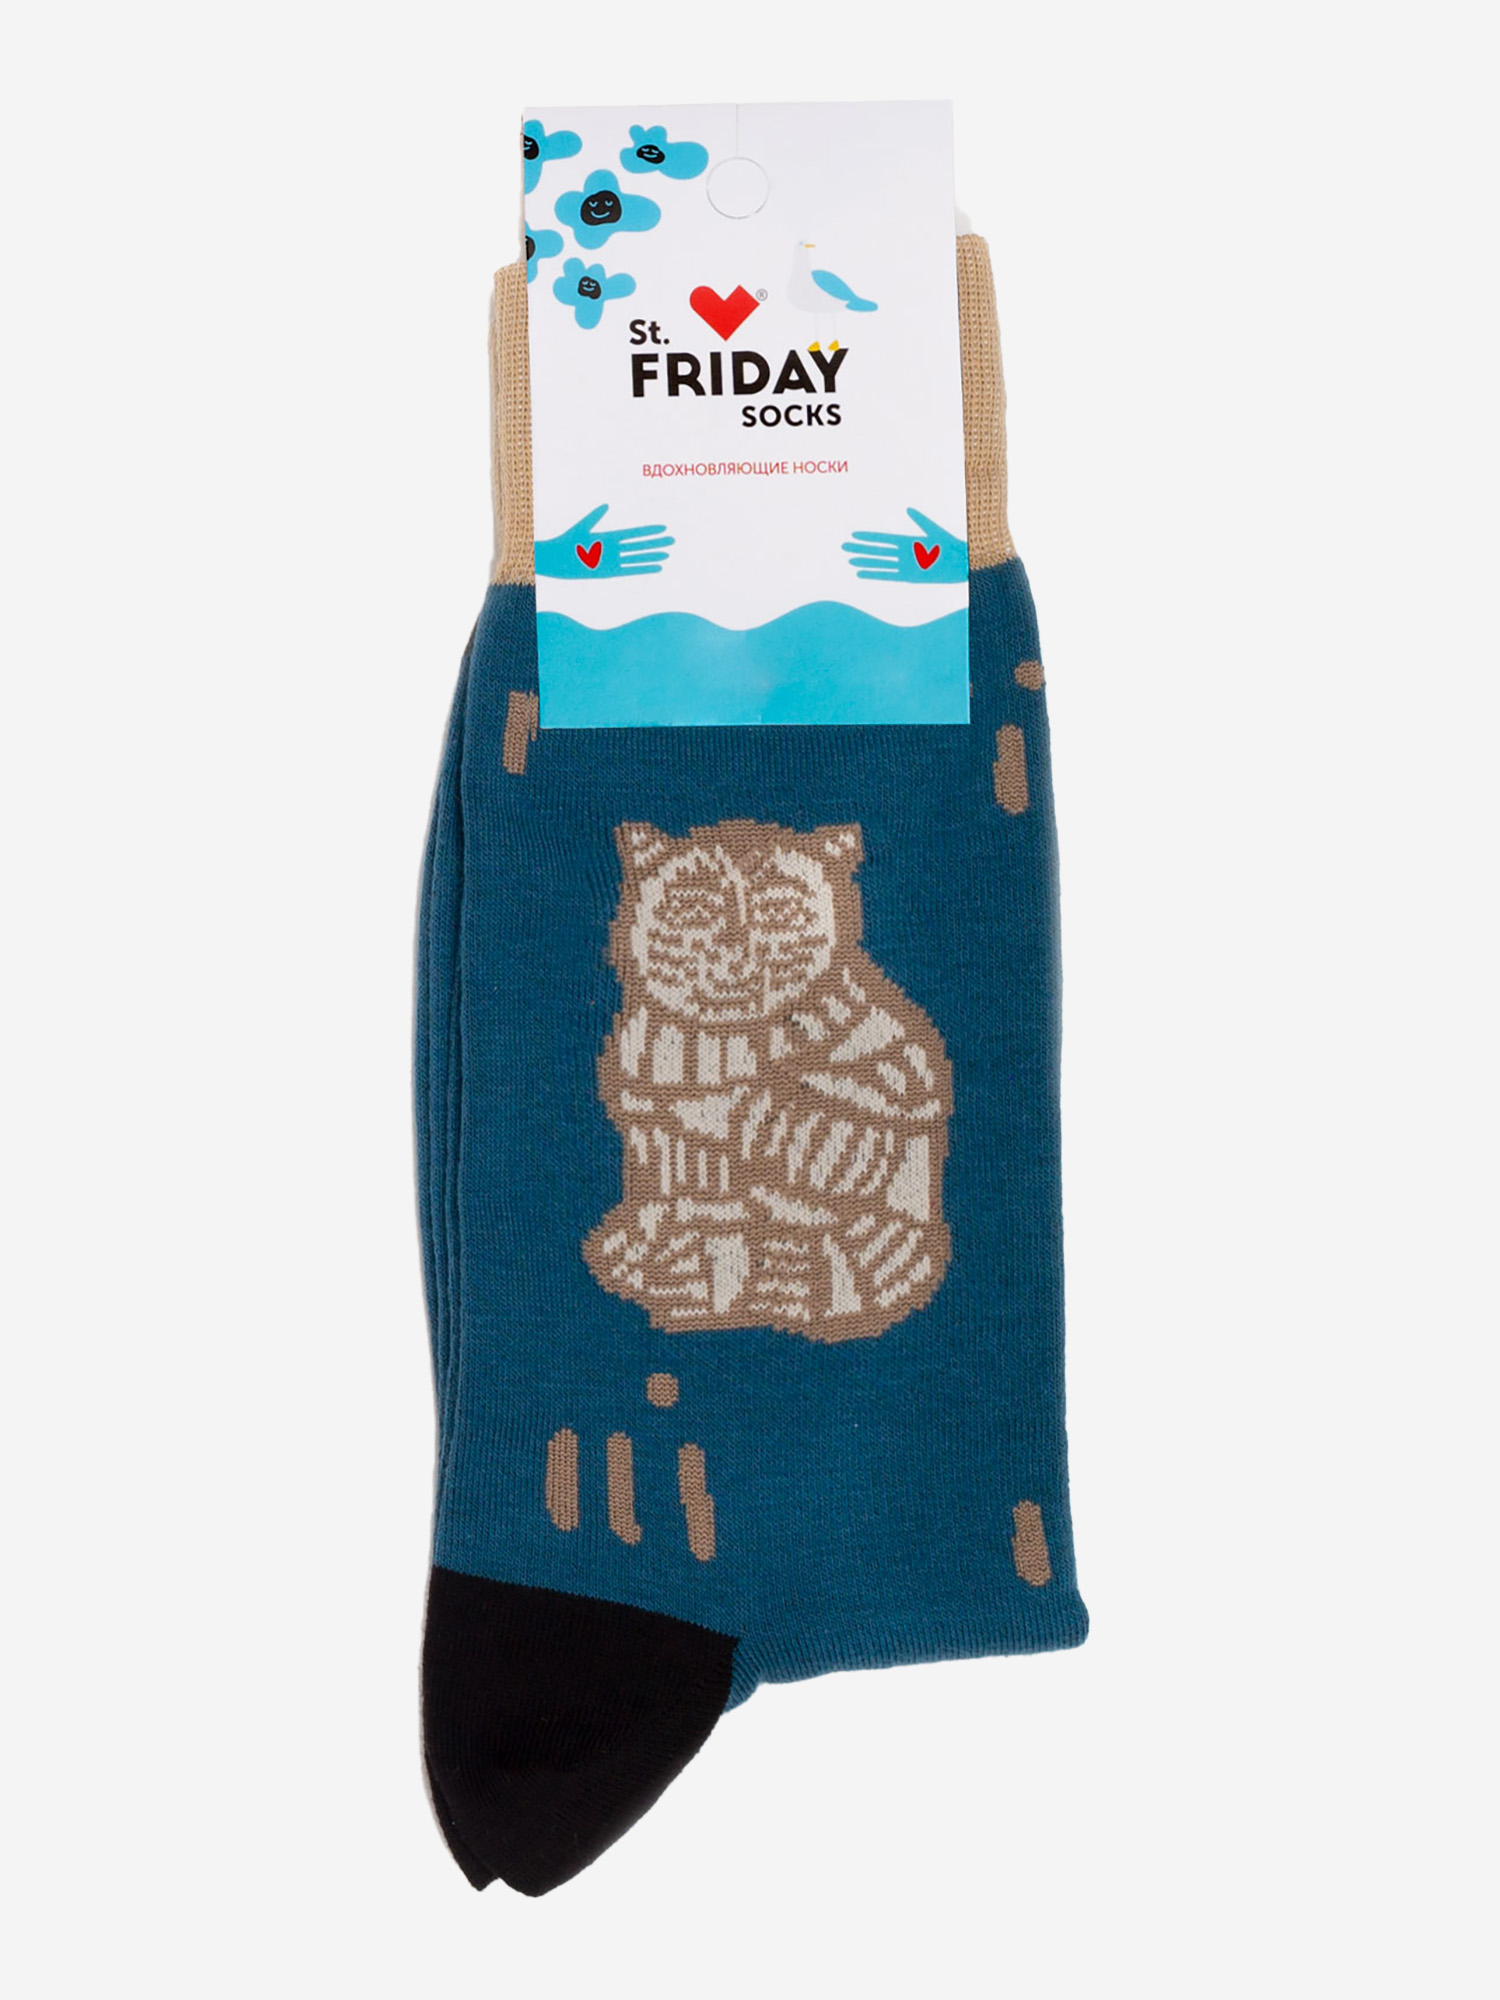 Носки с рисунками St.Friday Socks - Пряник кот, Синий пряник с черной икрой